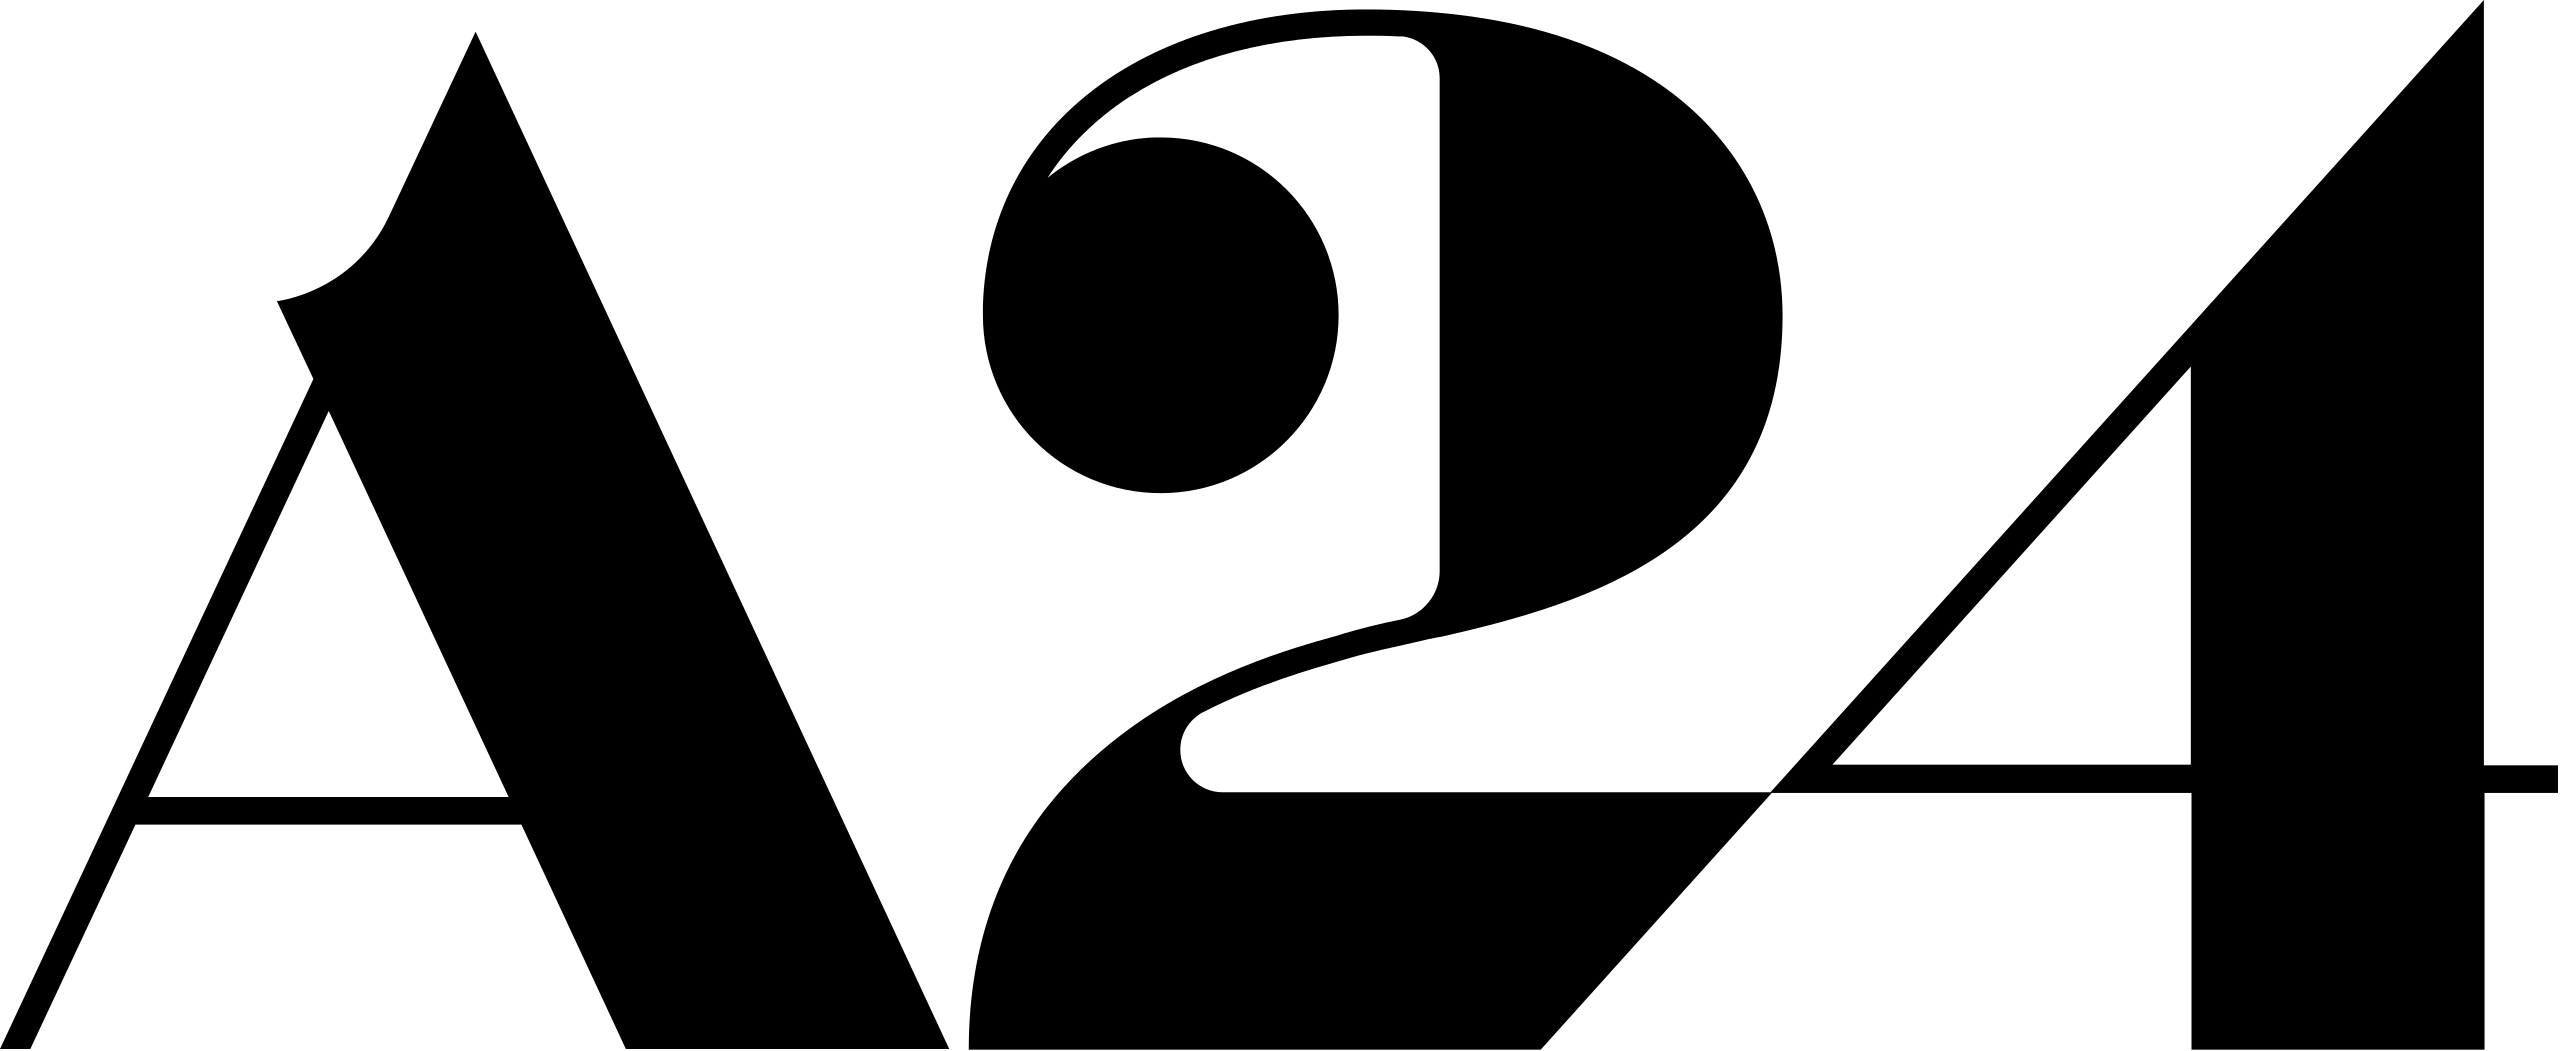 2560px-A24_logo.svg